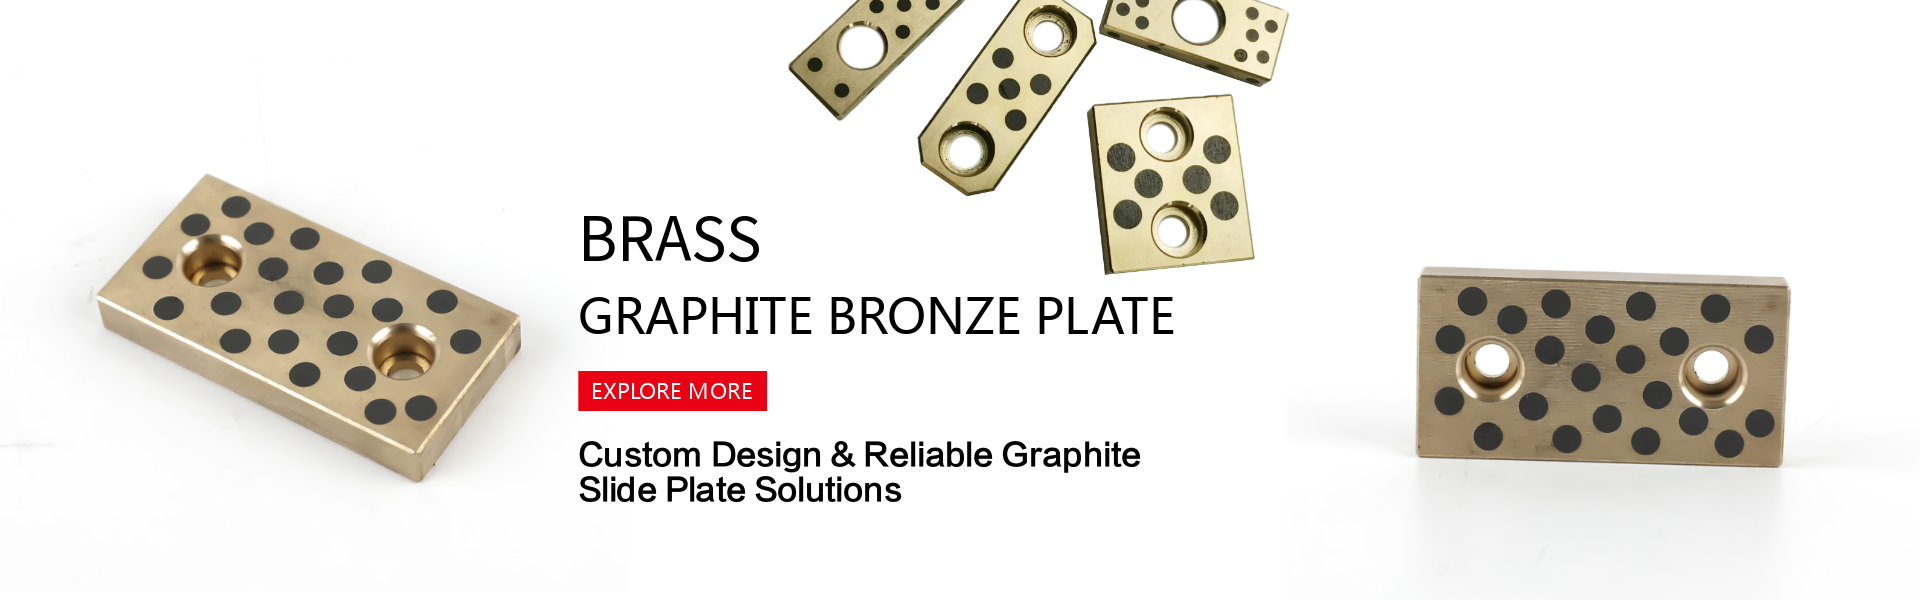 graphite bronze plate